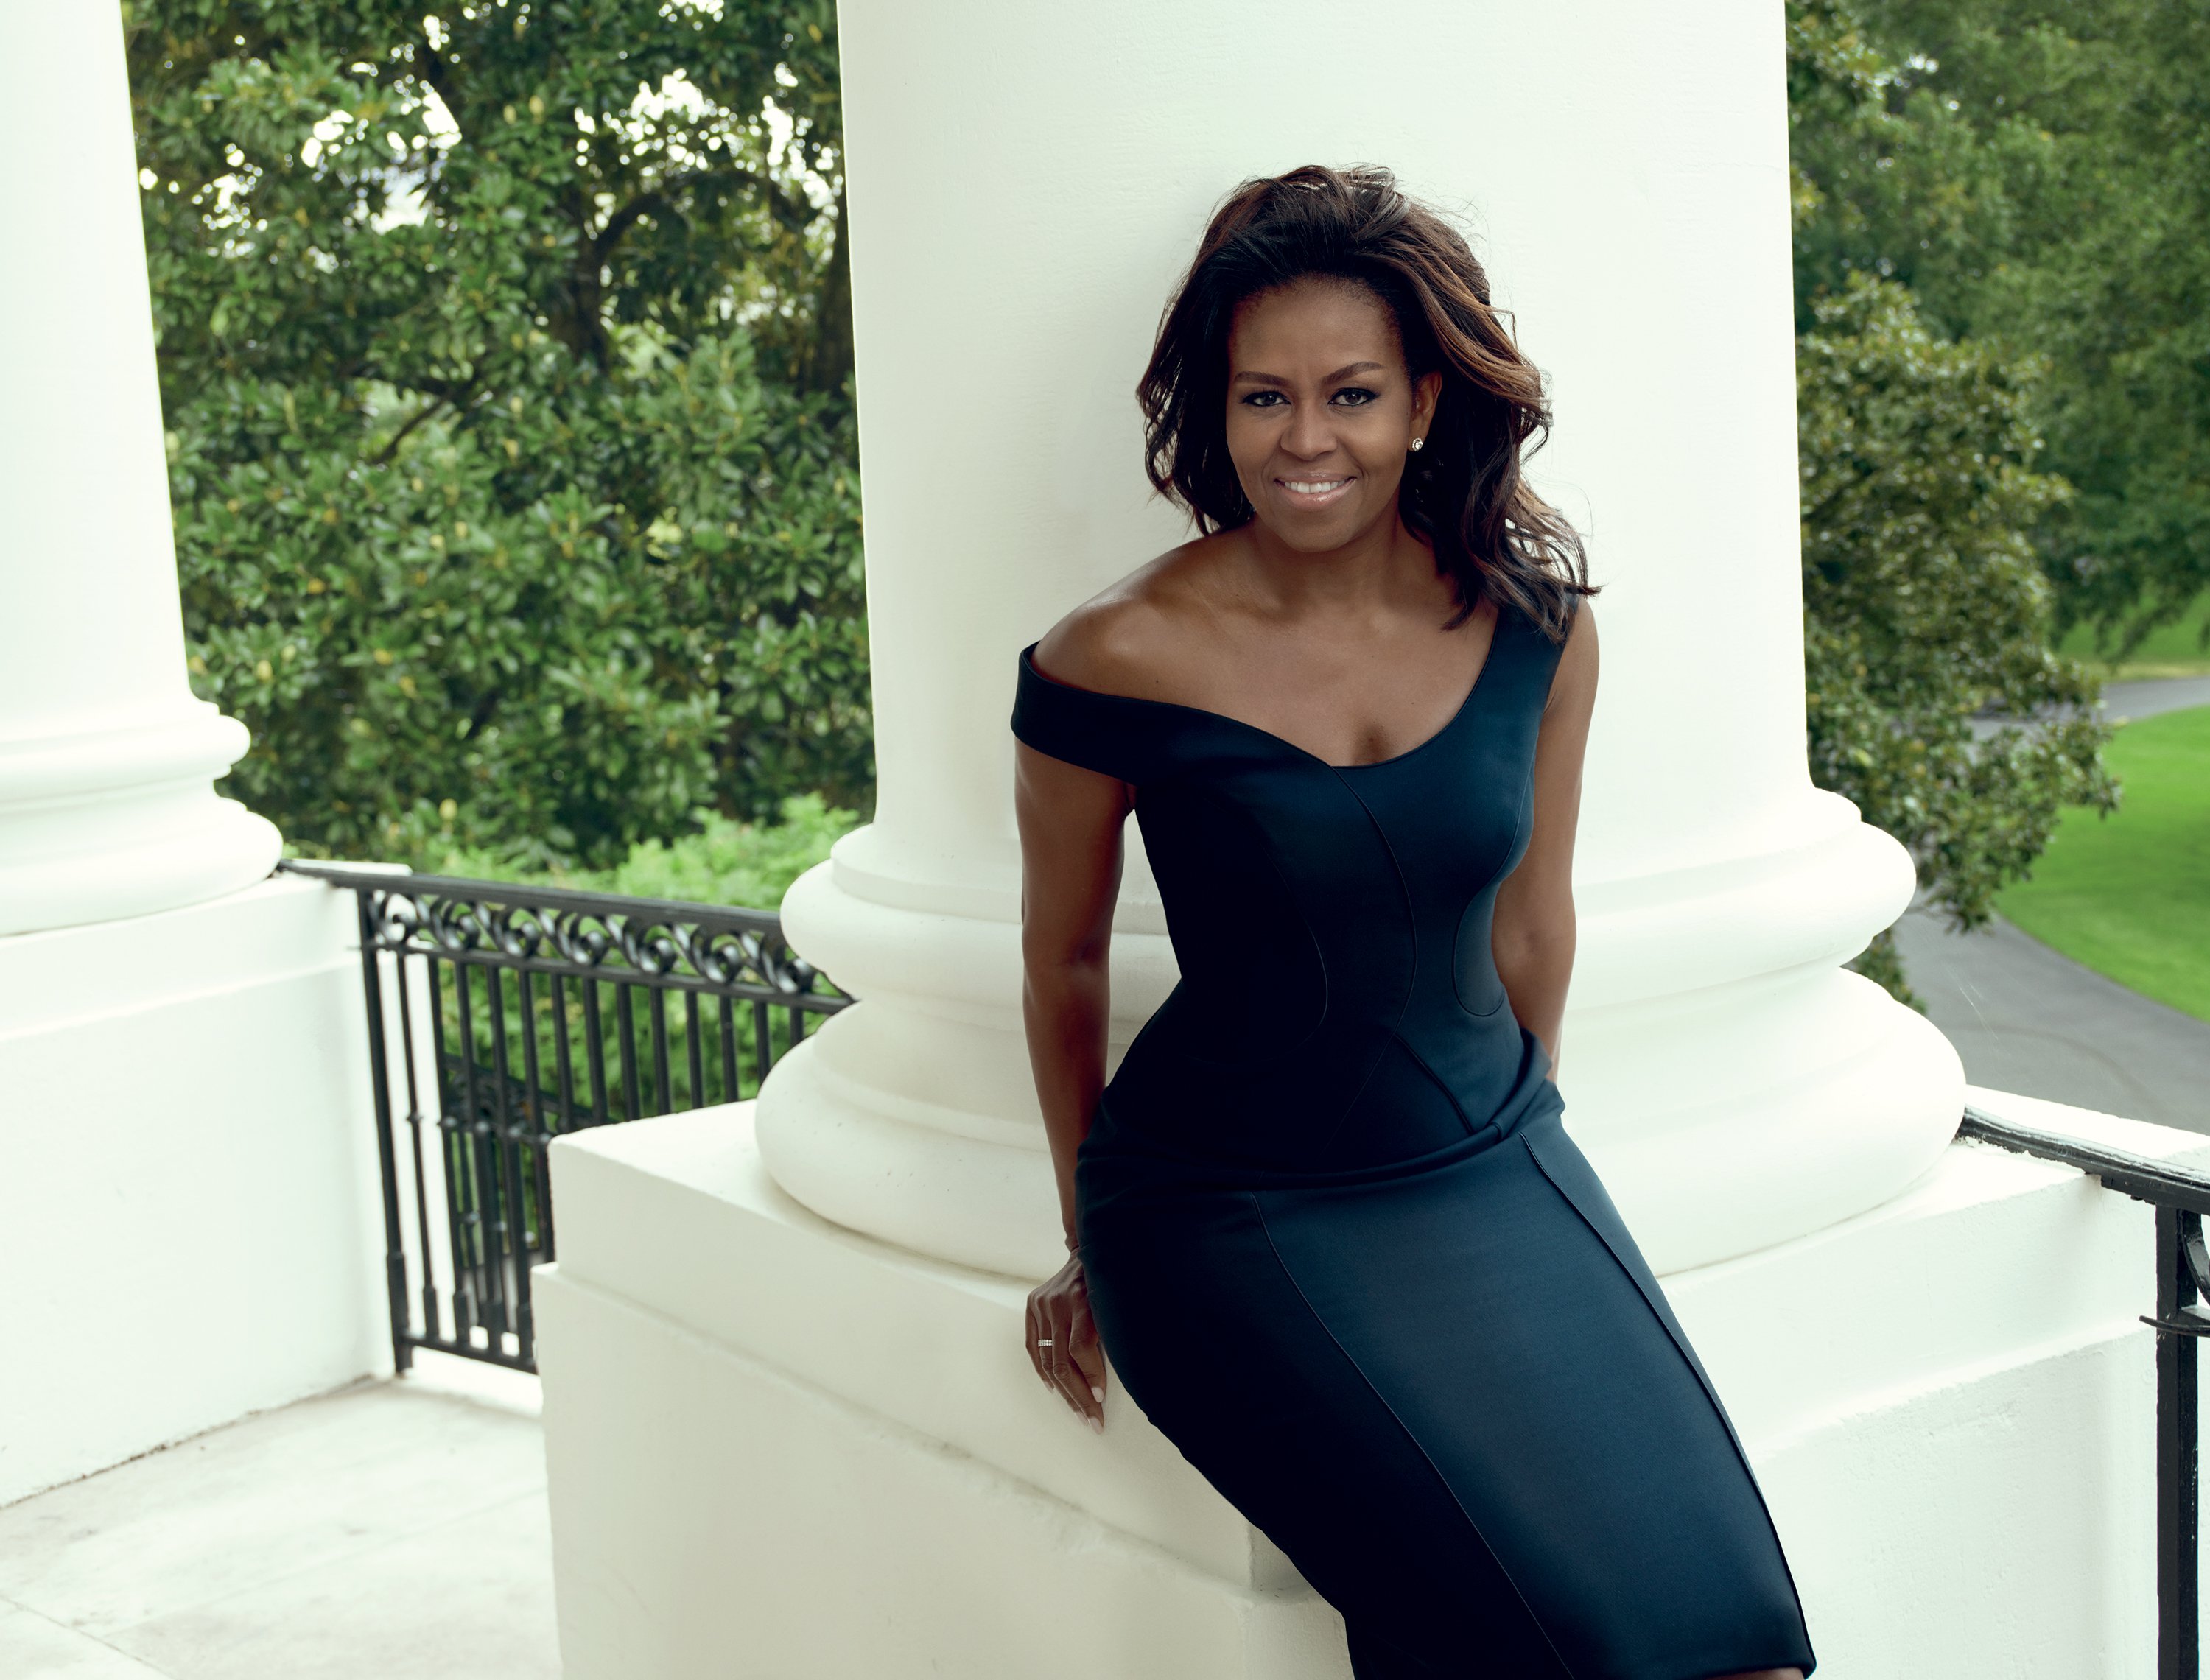 Michelle Obama ~ Vogue Photoshoot